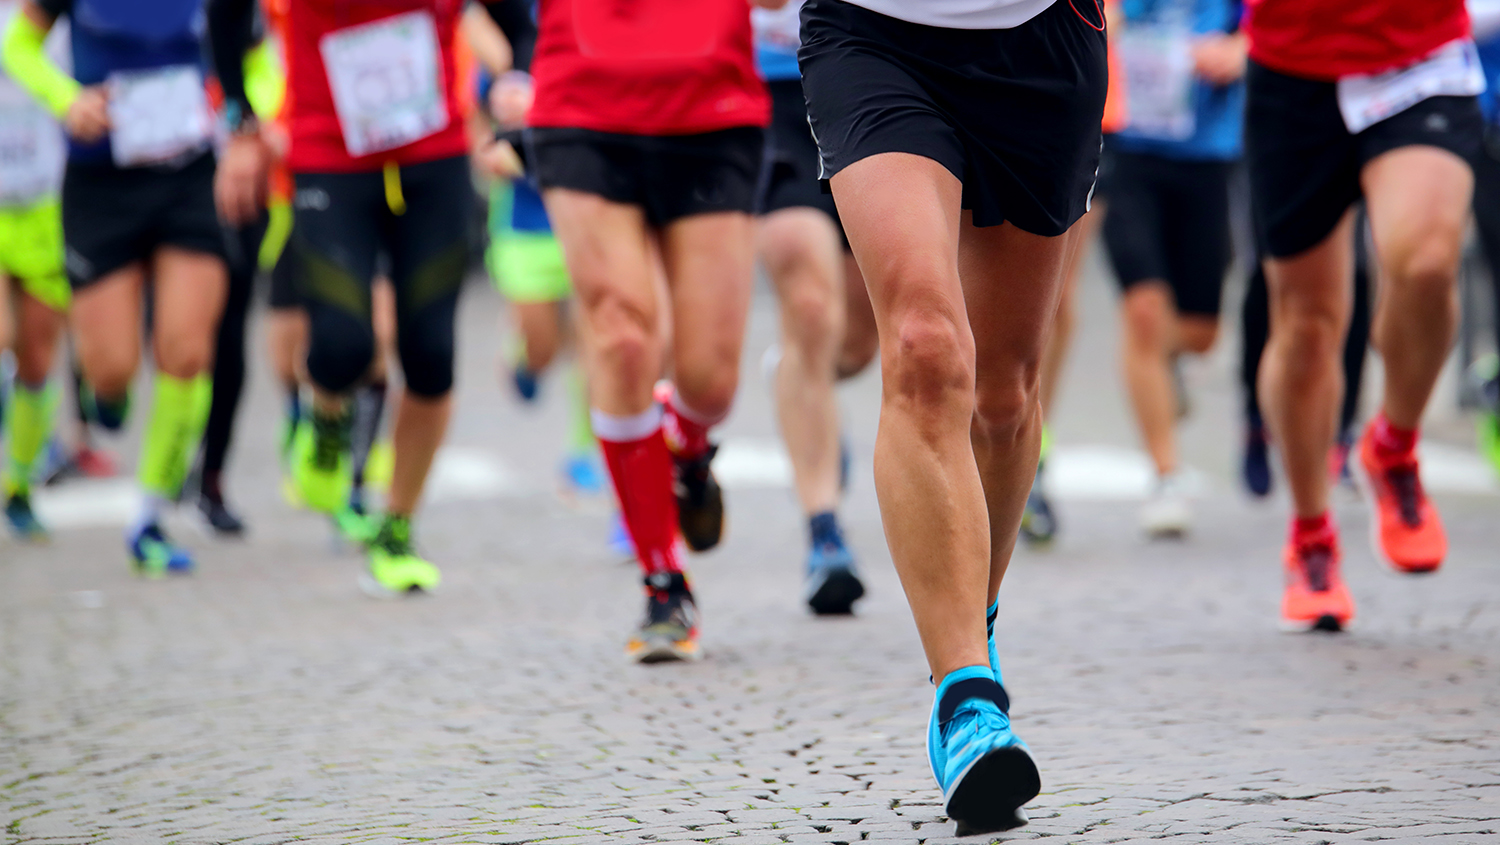 Många springande ben i shorts och gympaskor på en gata